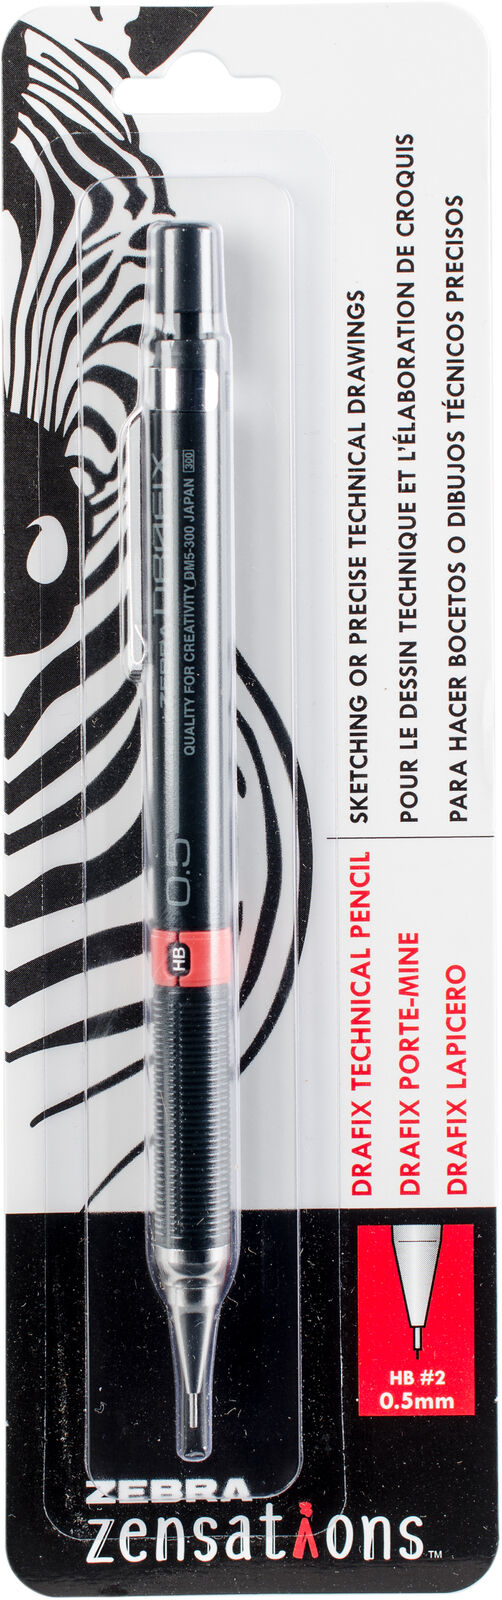 Zebra Zensations Drafix Technical Mechanical #2 Pencil-0.5mm